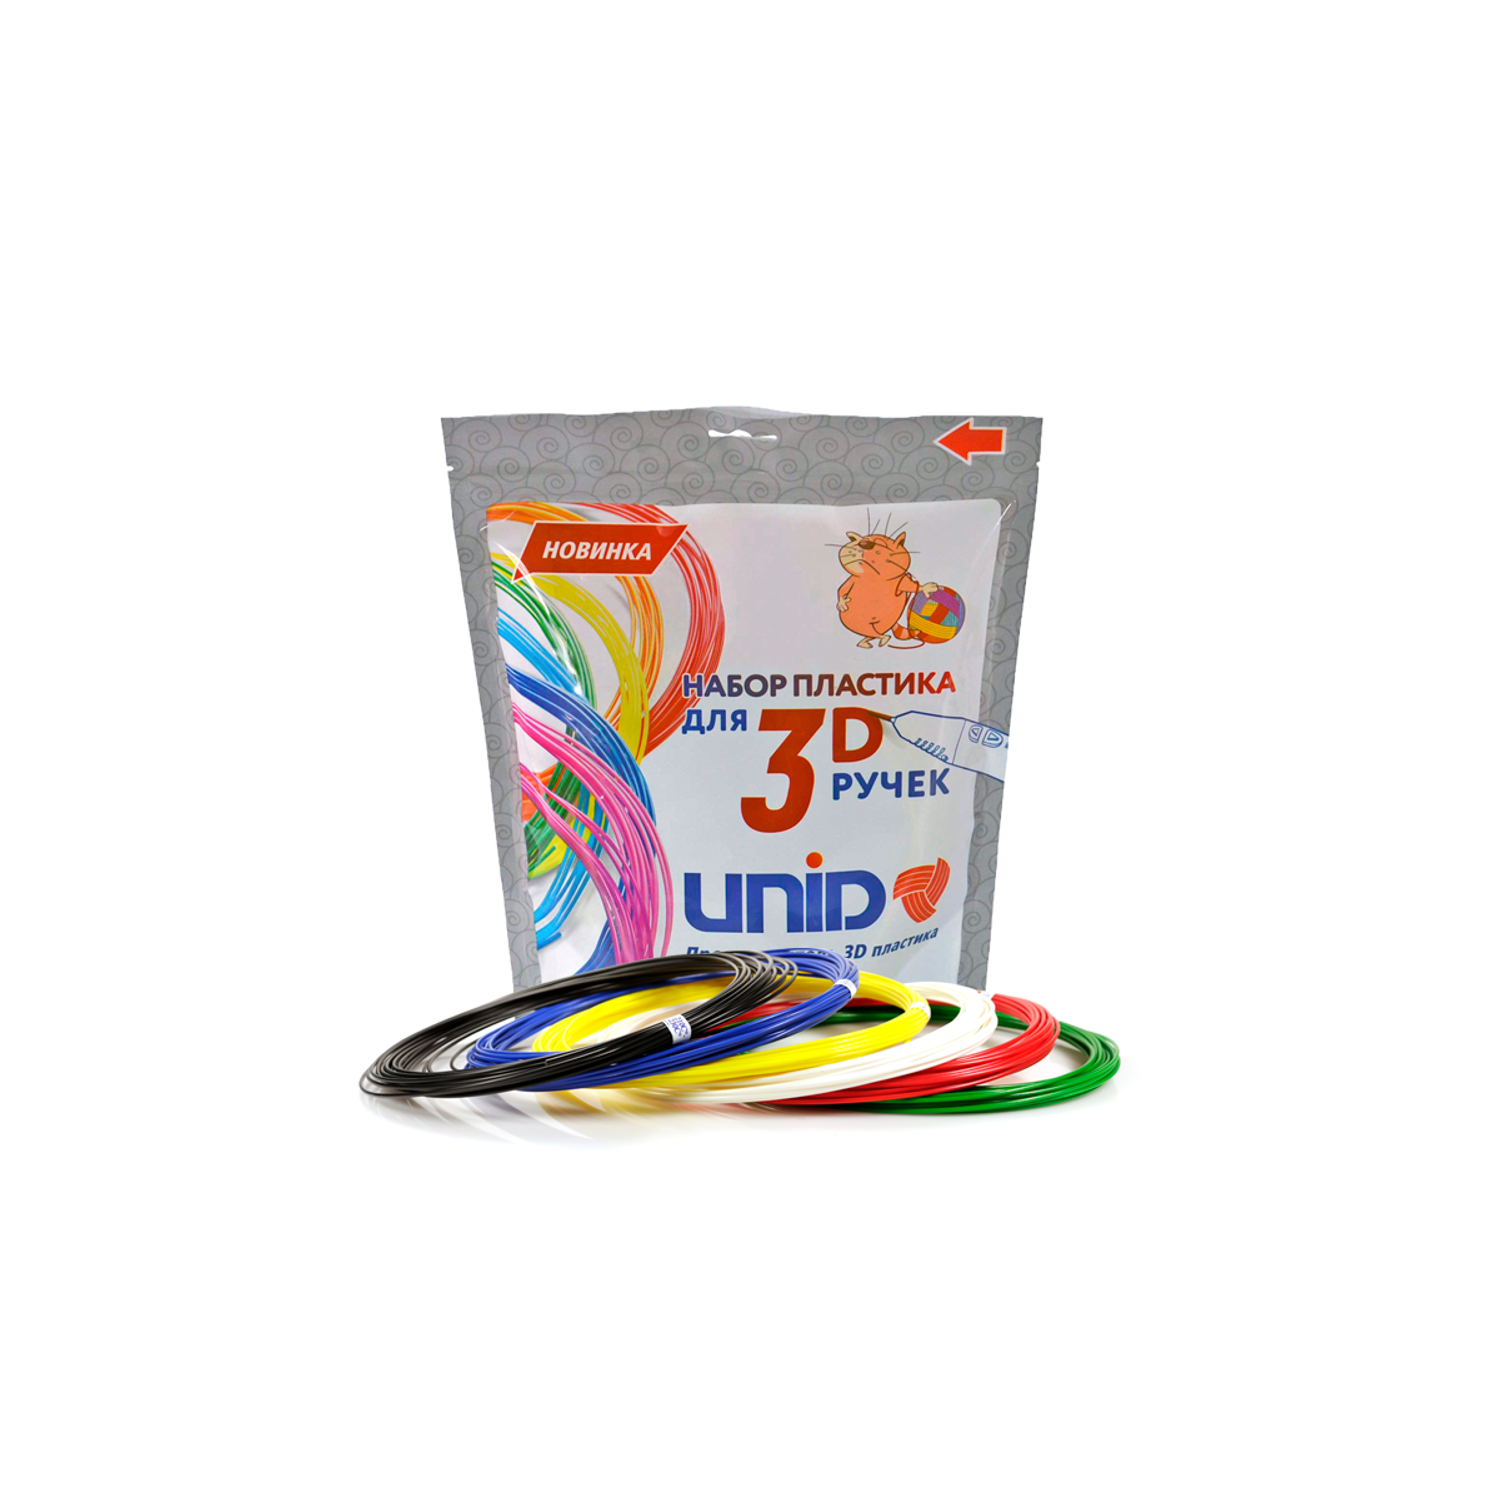 Пластик для 3д ручки UNID ABS6 - фото 1